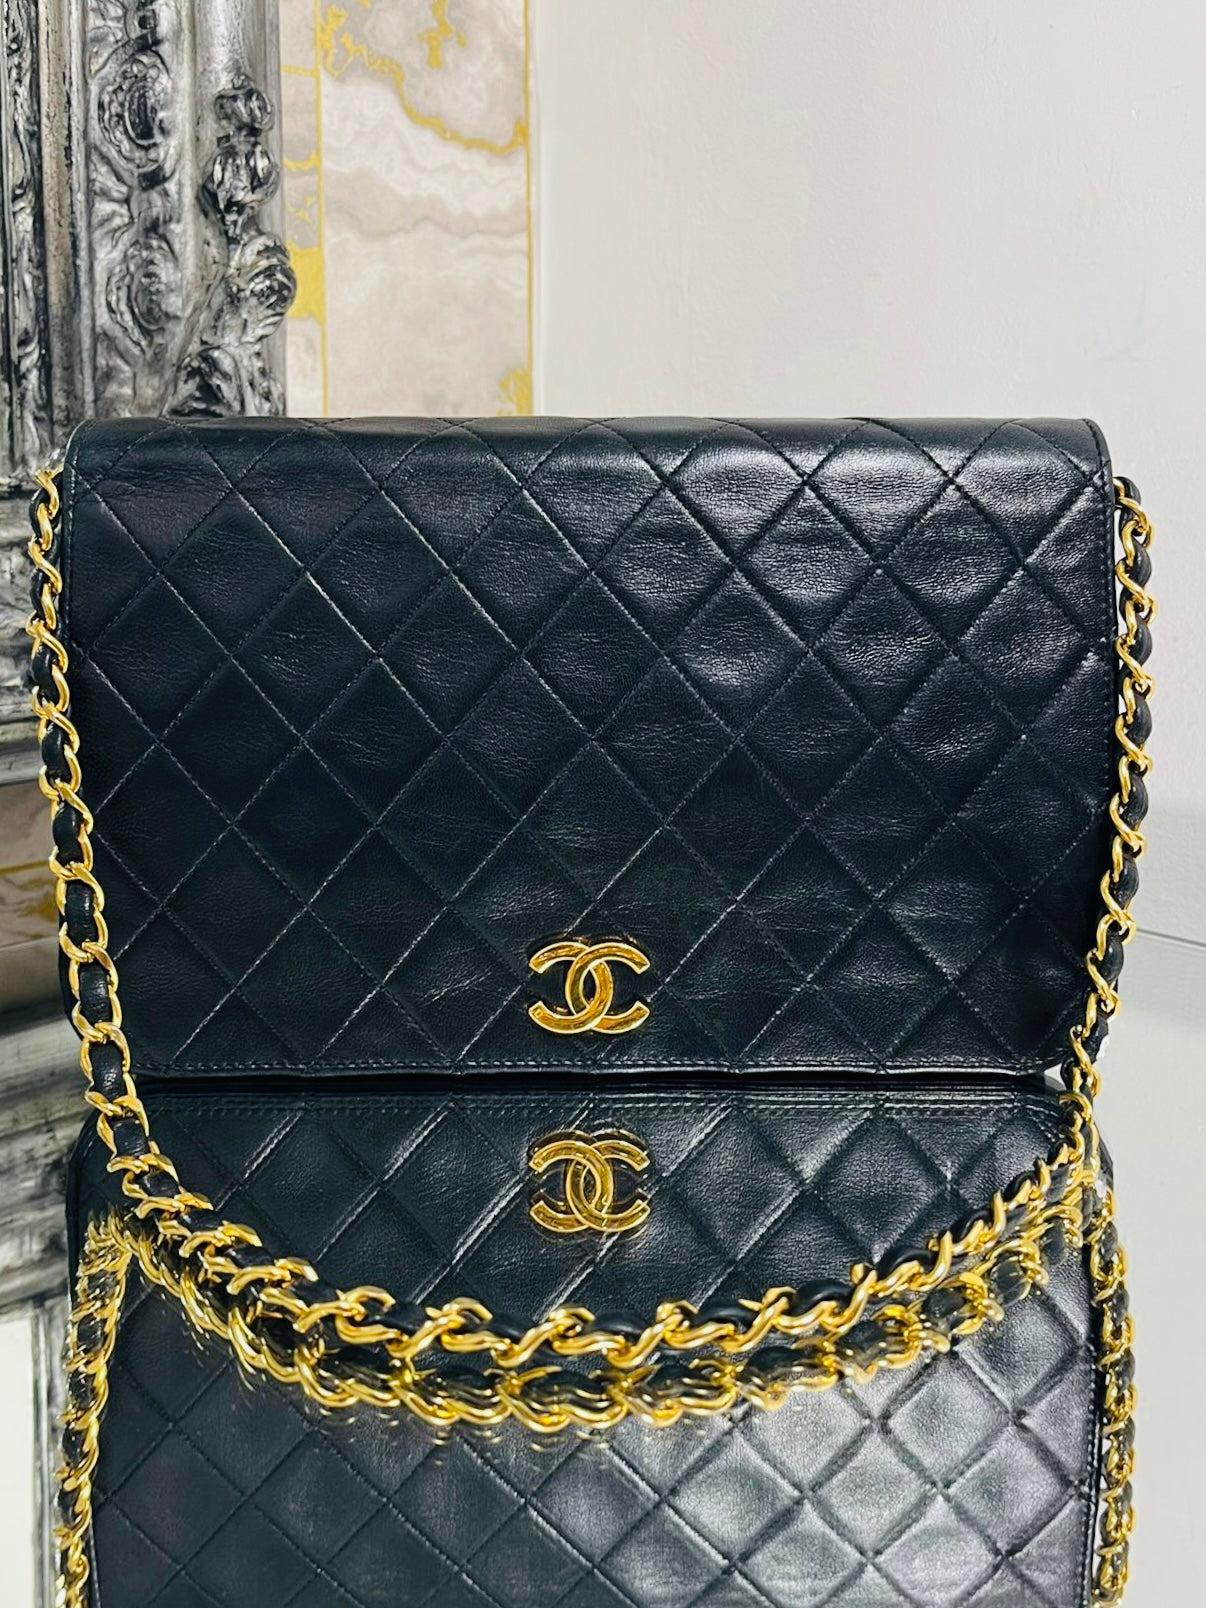 Chanel Vintage Timeless Single Flap Bag

Cuir noir à piqûre de diamant et accessoires plaqués or 24k. Logo 'CC' et bandoulière en chaîne et cuir. Intérieur en cuir bourgogne. Datant d'environ les années 1980. Pas de code de série en raison de